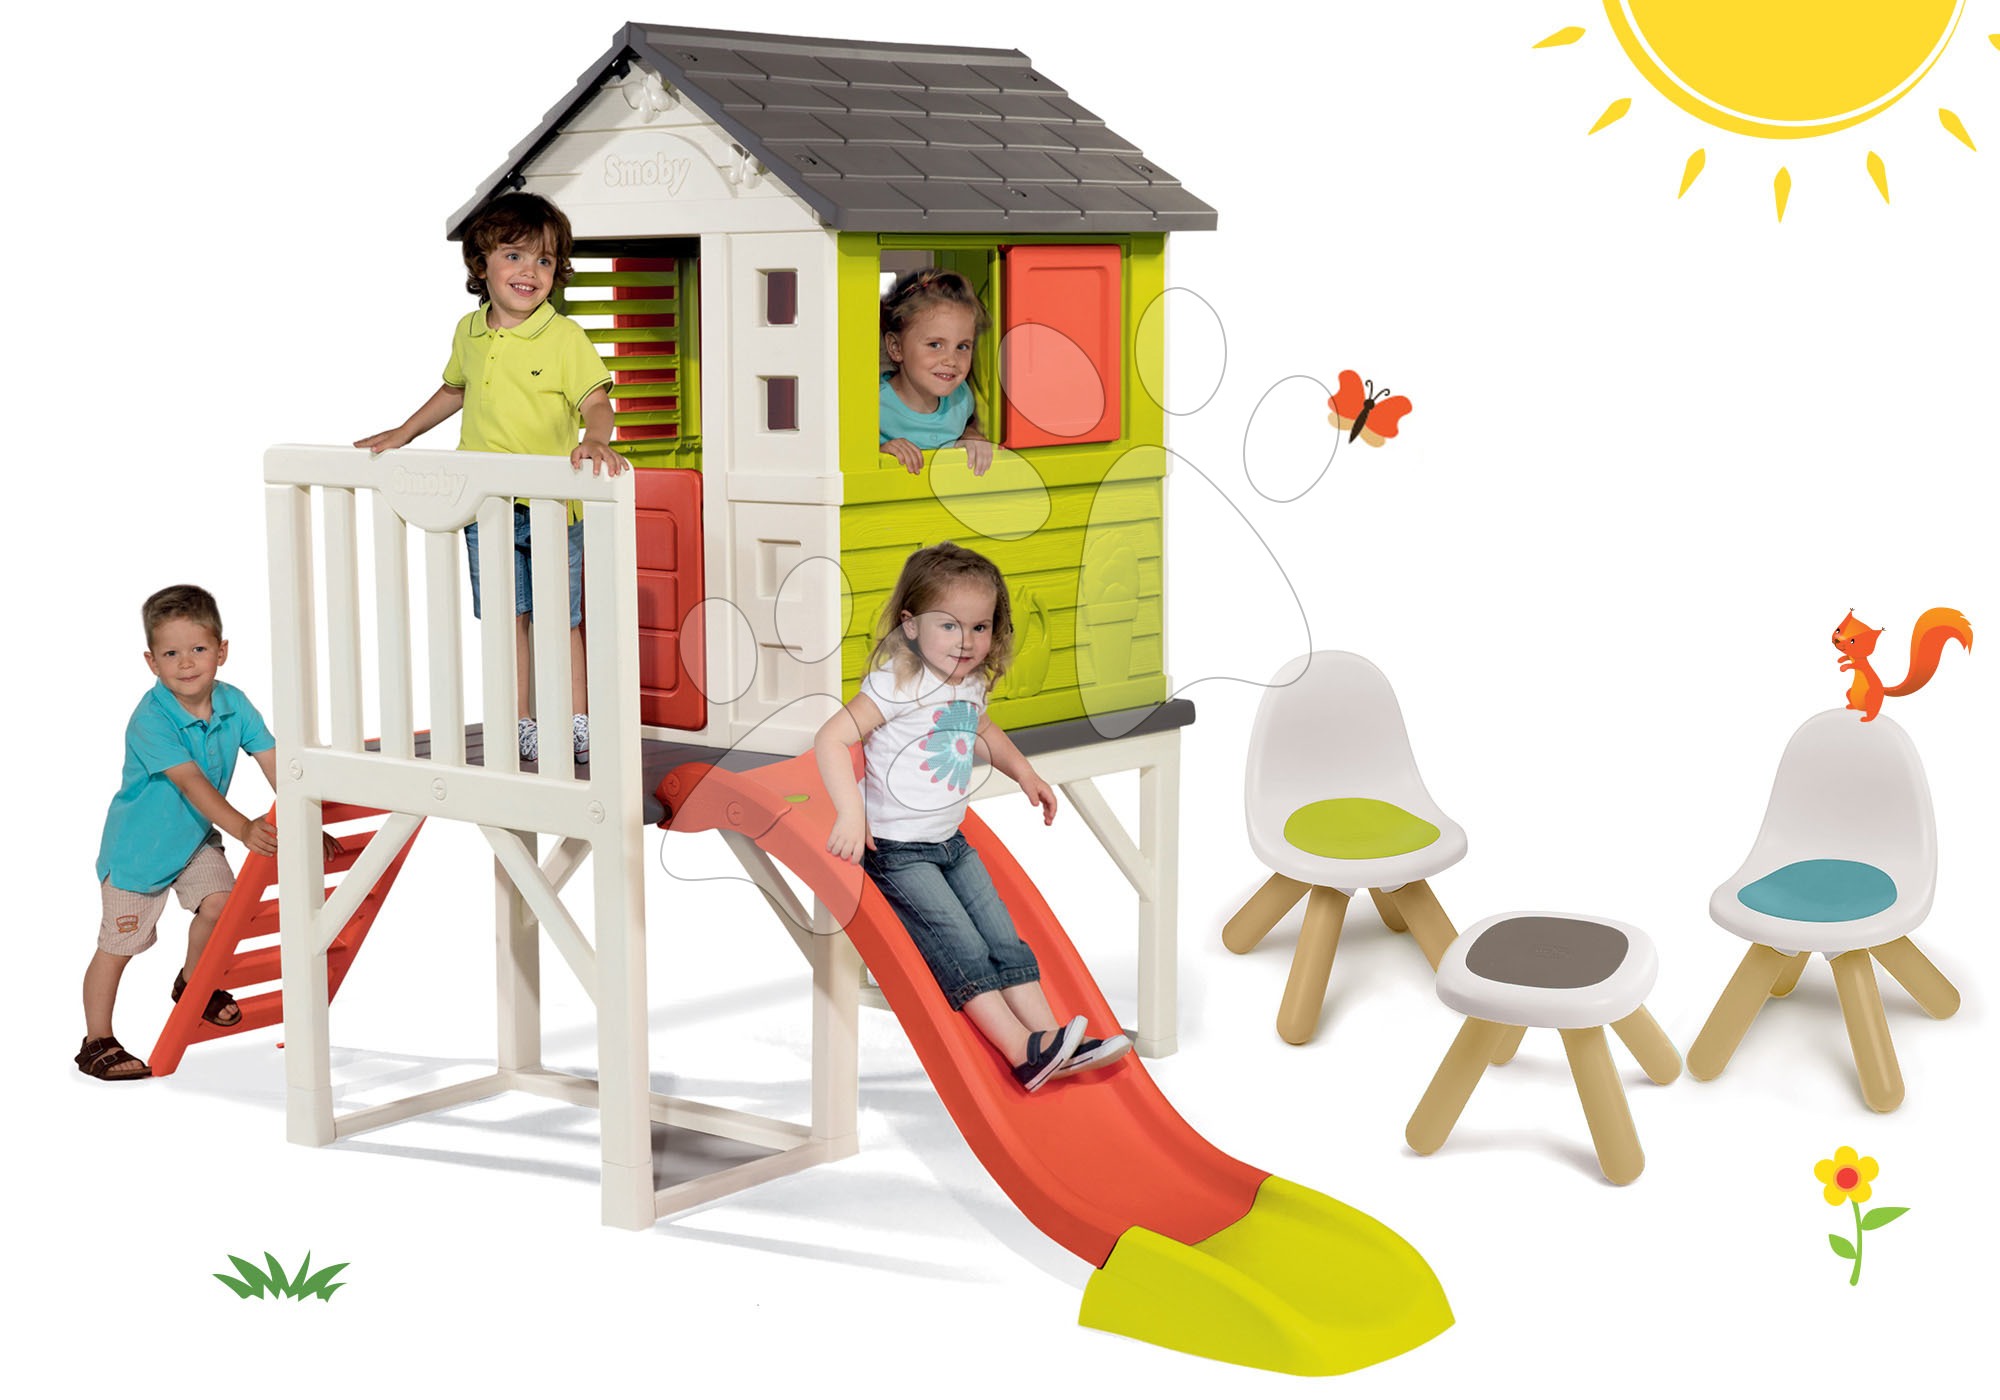 Smoby set detský domček na pilieroch Pilings House s 1,5 m šmykľavkou, 2 ks stoličky Kid Chair a stolík 810800-9